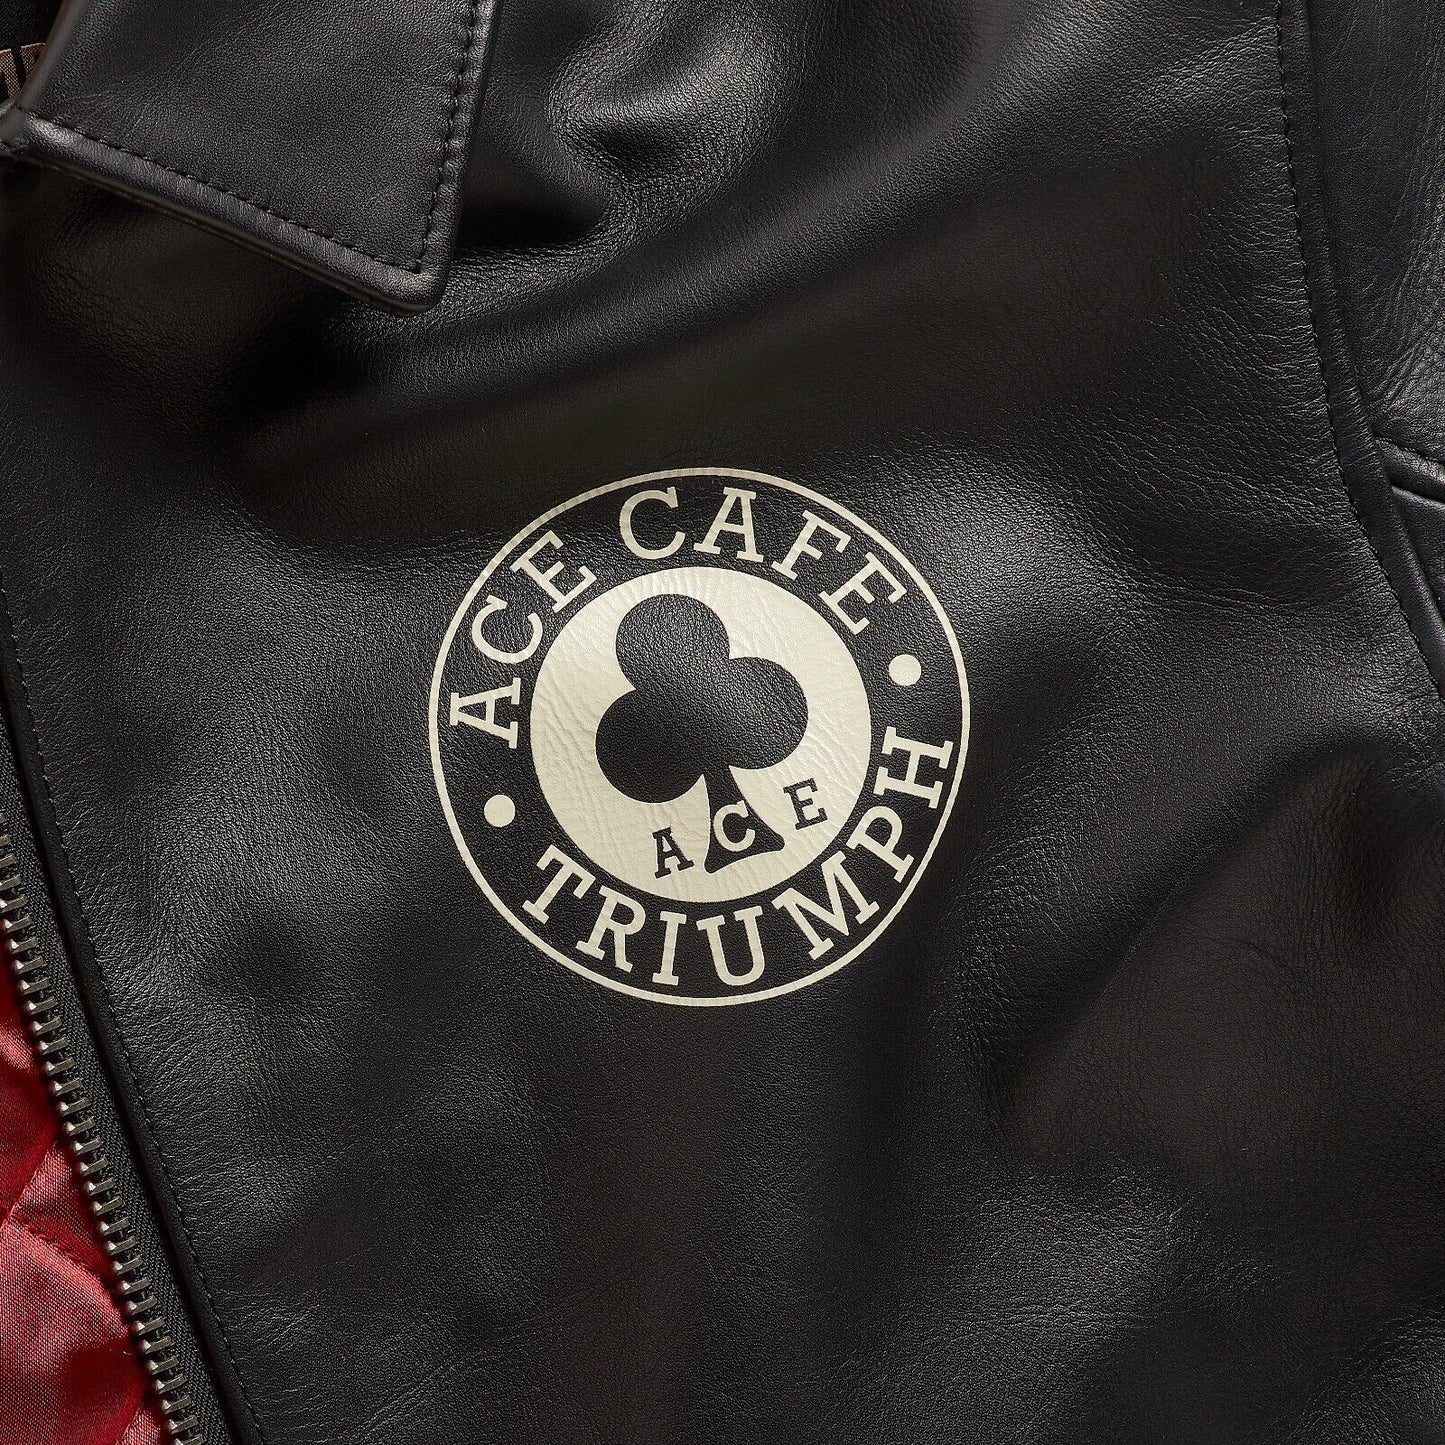 Ace Cafe Leather Jacket